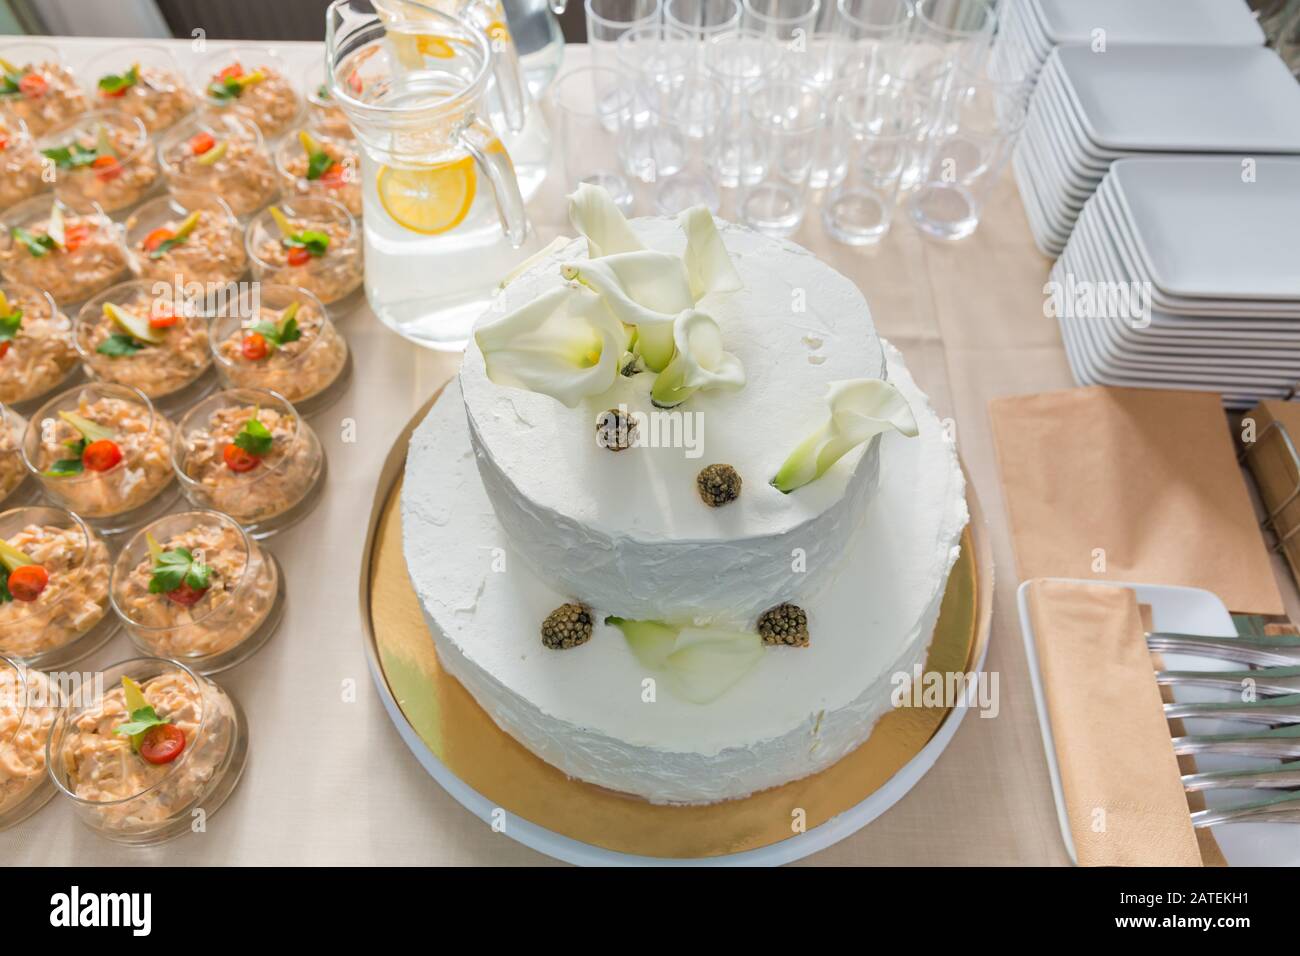 Cesis De La Ville, Lettonie. Gâteau de mariage blanc, décor aux fleurs et en-cas. 25.01.2020 Banque D'Images